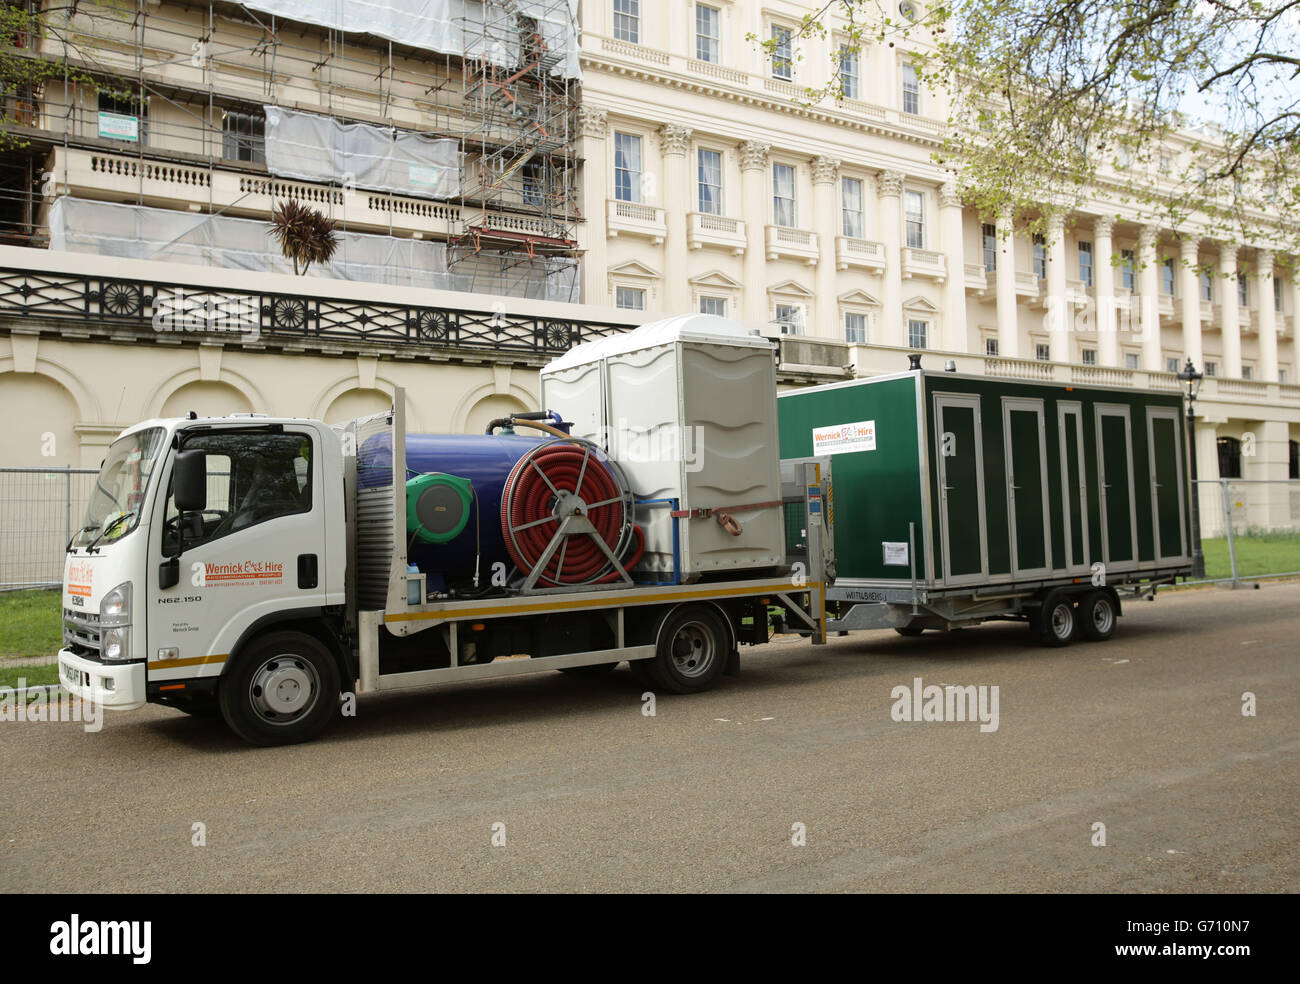 Die letzten Vorbereitungen für den London Marathon entlang der Mall im Zentrum von London sind getroffen. DRÜCKEN Sie VERBANDSFOTO. Bilddatum: Freitag, 11. April 2014. Bildnachweis sollte lauten: Yui Mok/PA Wire Stockfoto